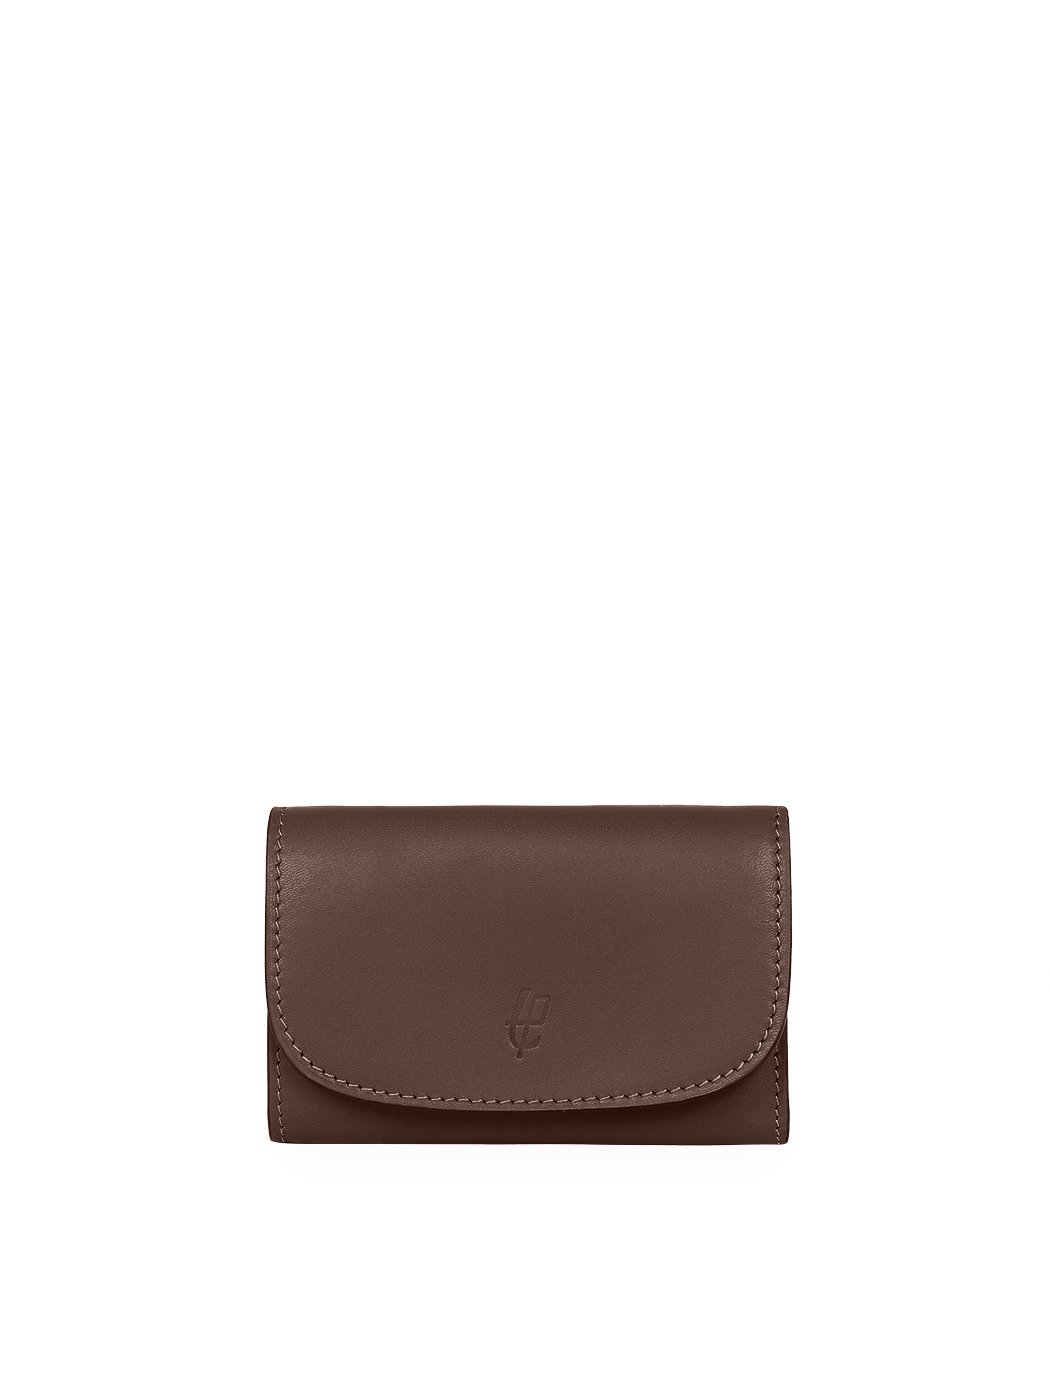 Компактный бумажник с карманом для мелочи на молнии темно - коричневого цвета